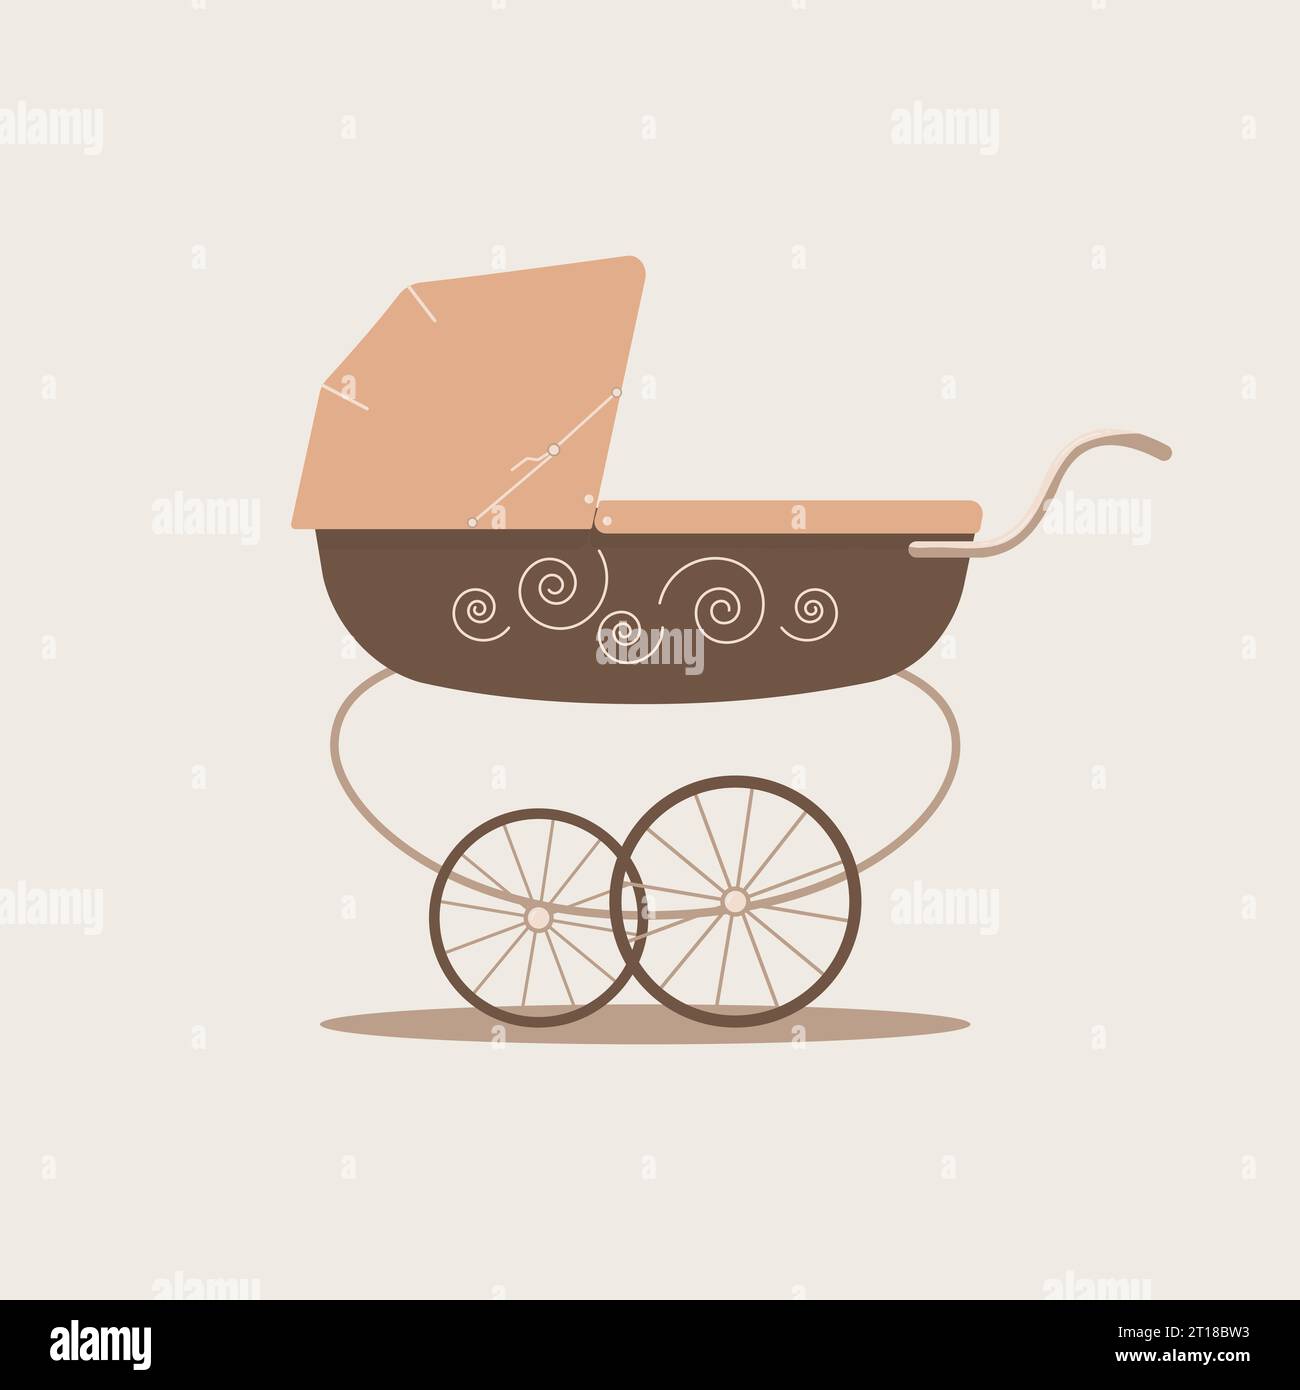 Cochecito de bebé unisex de lujo lindo en colores beige y marrón sobre fondo claro. Transporte para el cuidado del bebé y walks.Vector ilustración plana Ilustración del Vector